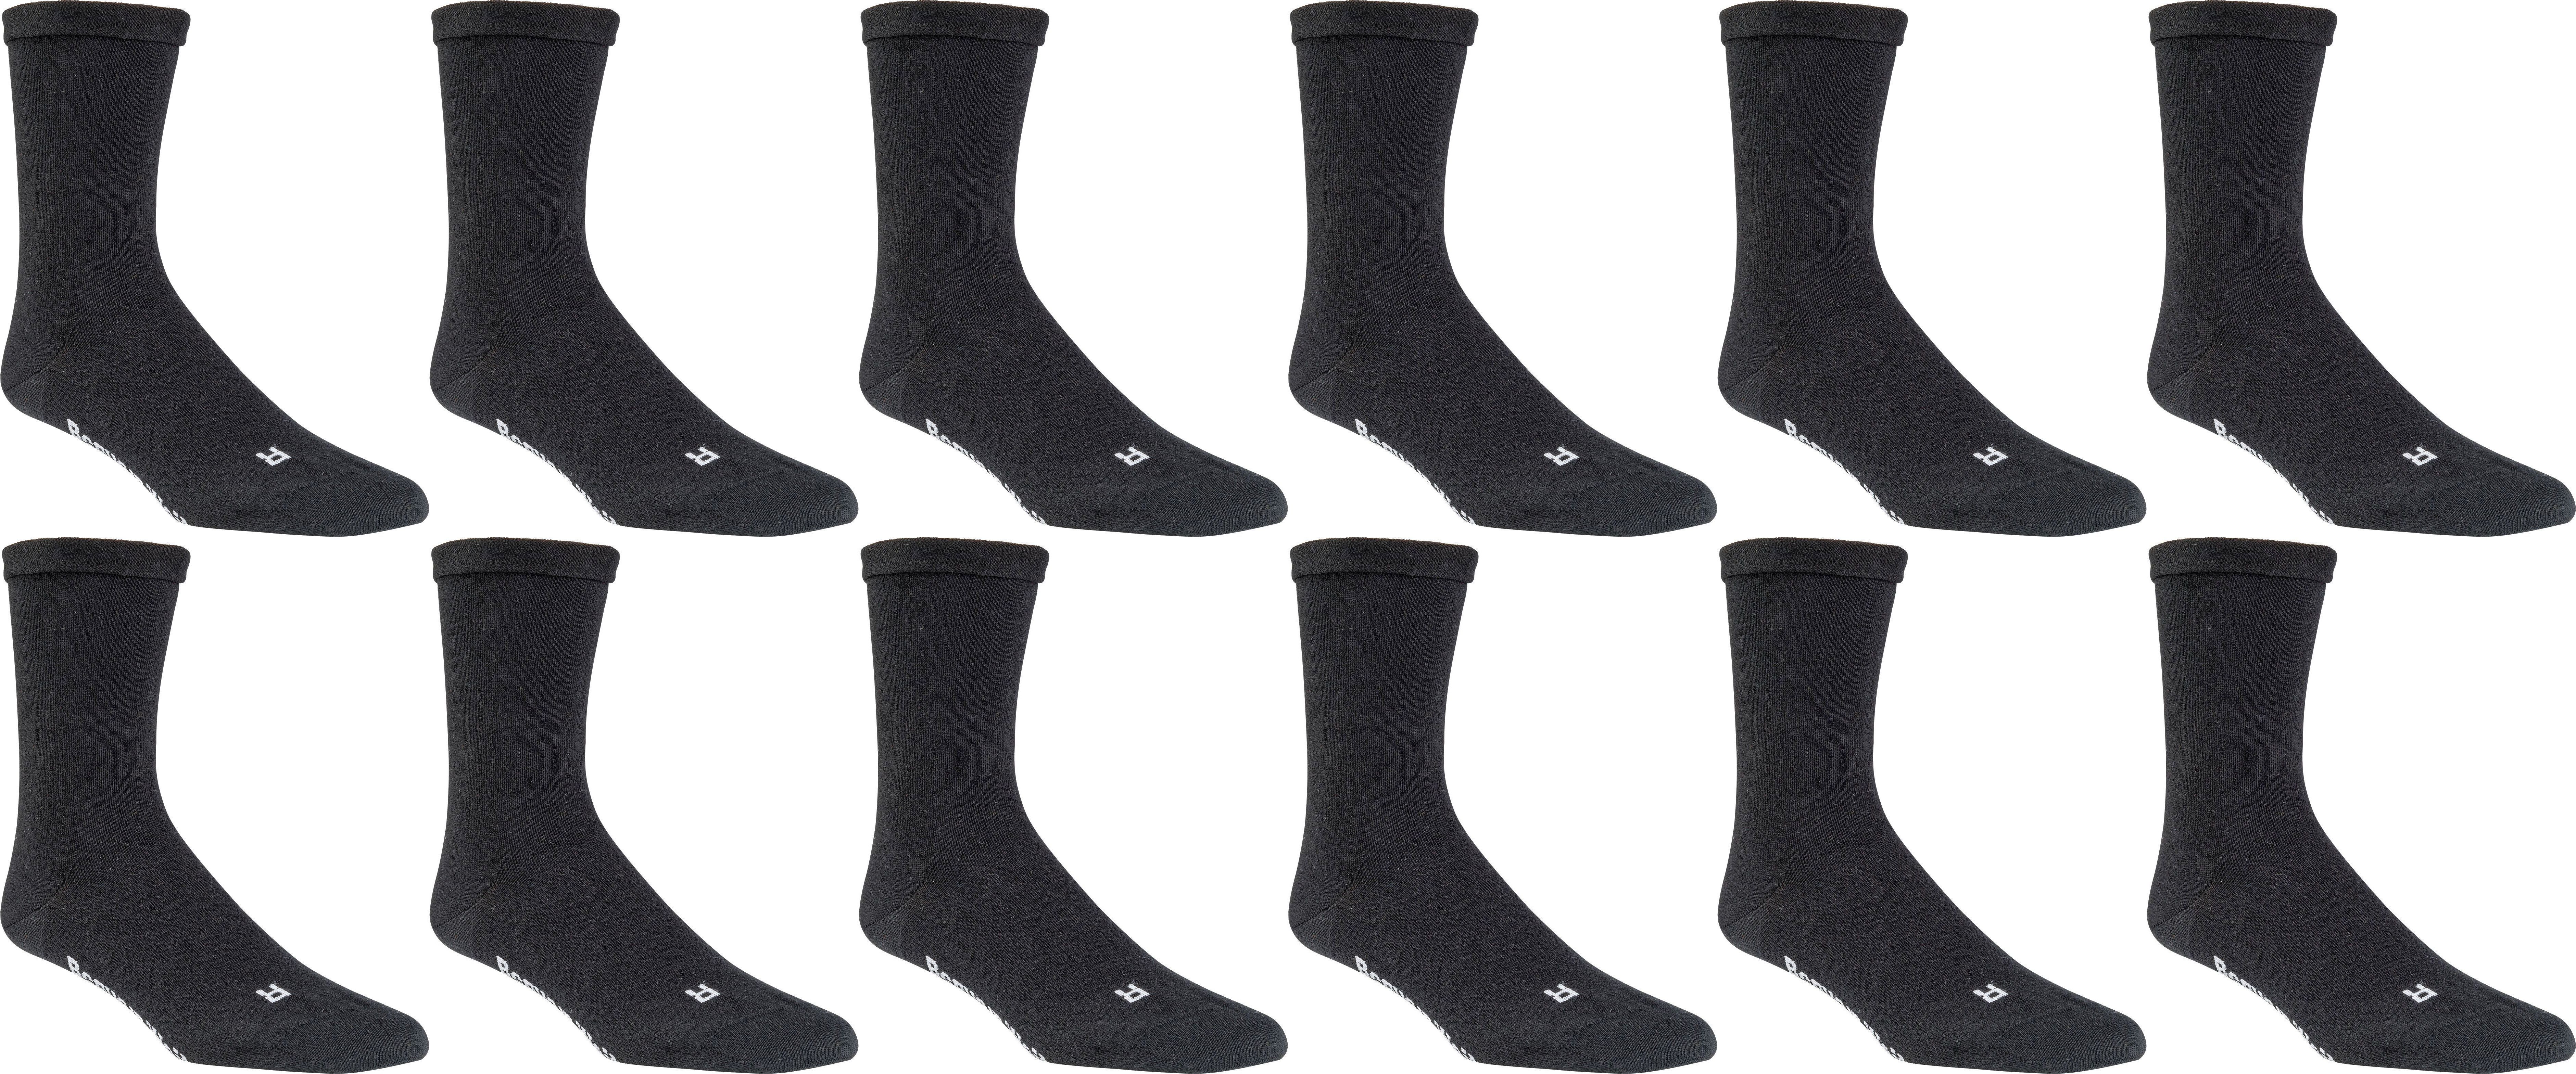 Wellness-Socken mit Rollrand  » EXTRA-BREIT        2,4 oder 6 Paar